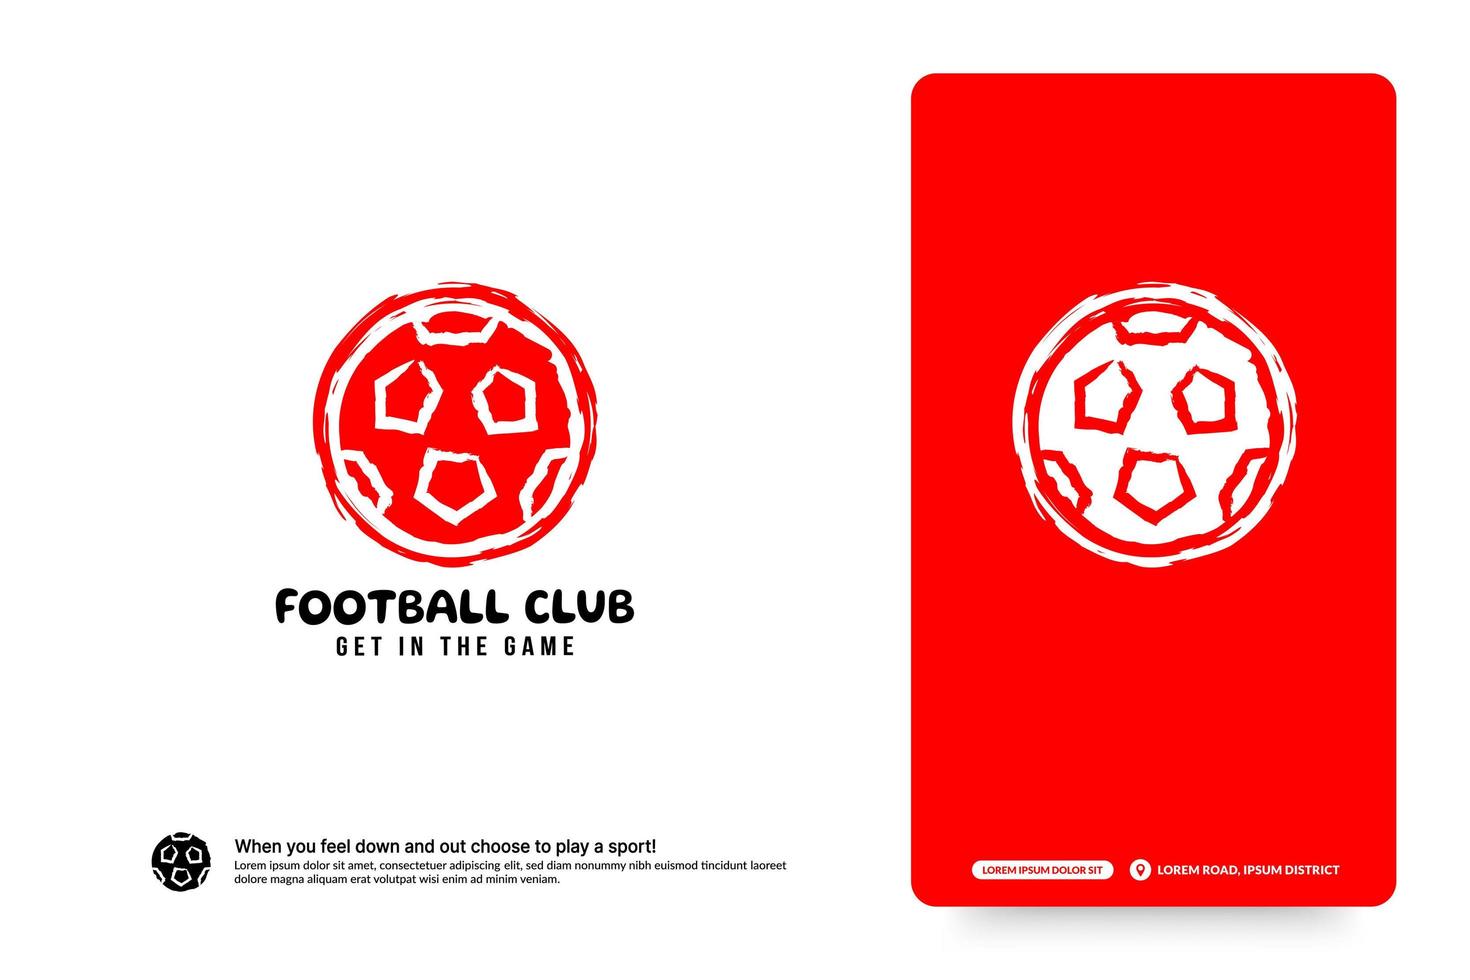 plantilla de diseño de logotipo de club de fútbol, concepto de logotipo de torneos de fútbol. Identidad del equipo de fútbol aislada sobre fondo blanco, ilustraciones de vectores de diseño de símbolo de deporte abstracto.